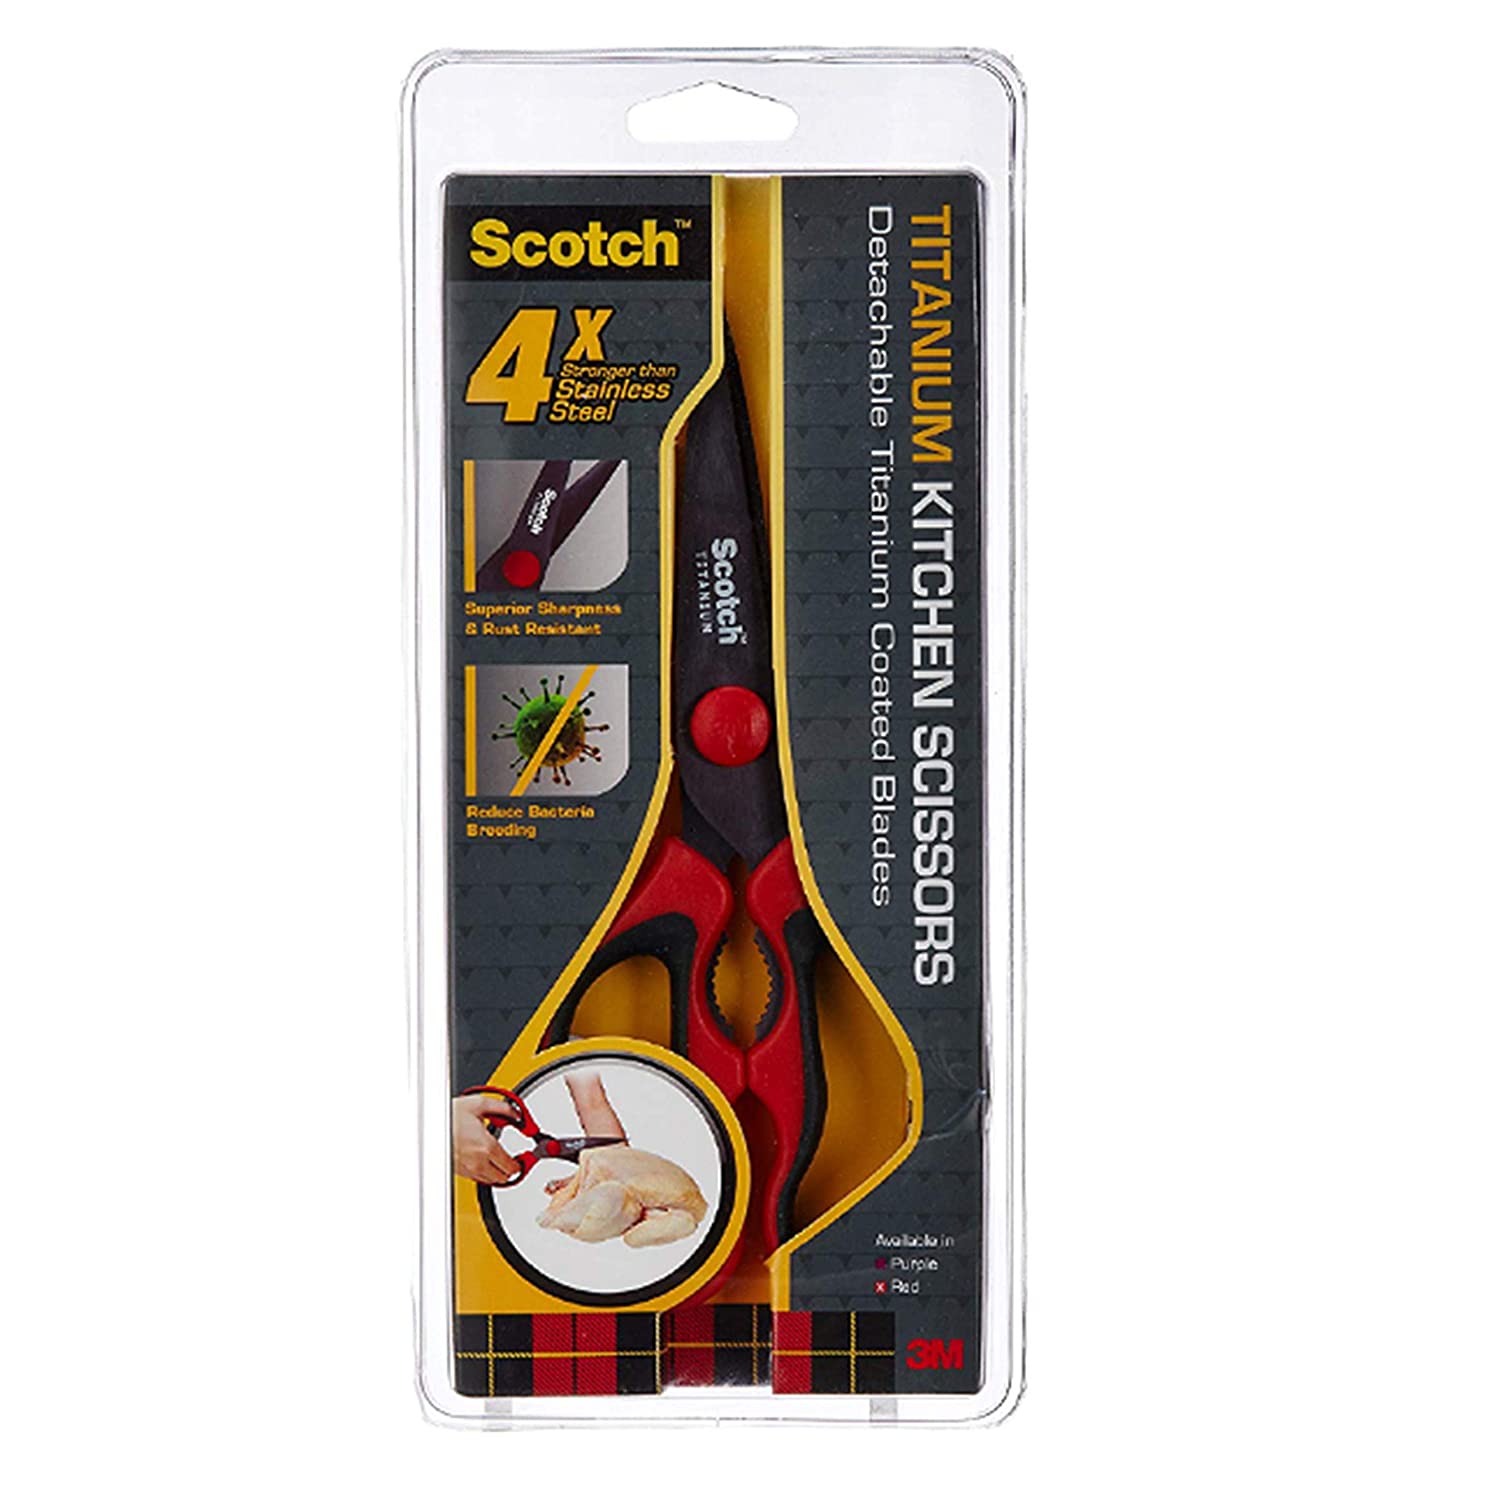 Detec™ 3M Scotch Titanium kitchen Scissor (Pack of 3)